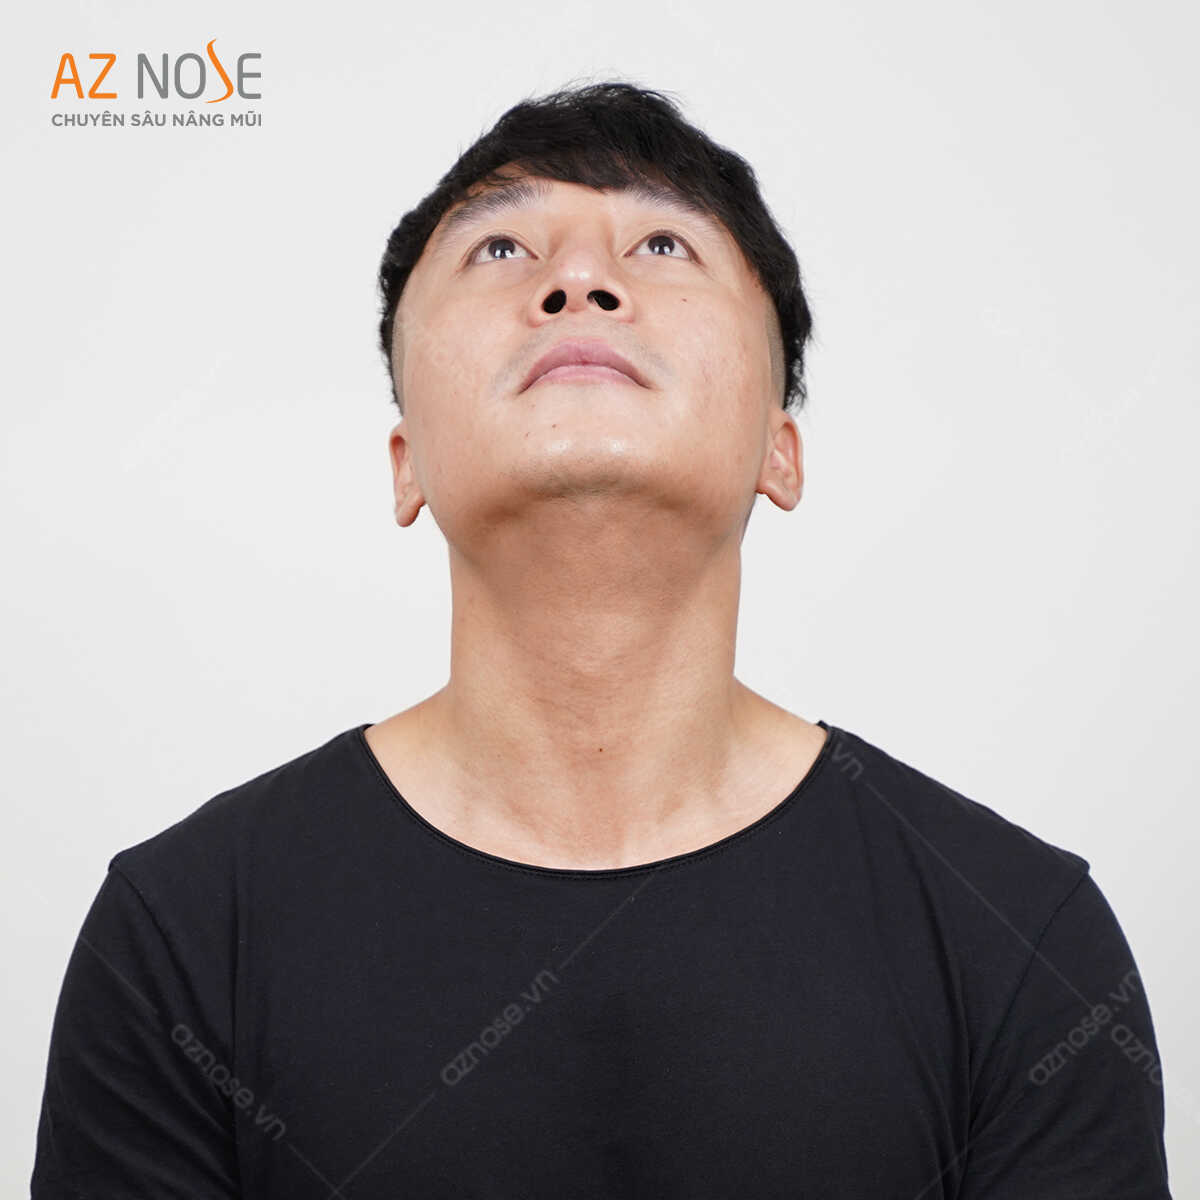 Tình trạng mũi trước khi nâng: Đầu mũi lệch phải, lỗ mũi hai bên không đều